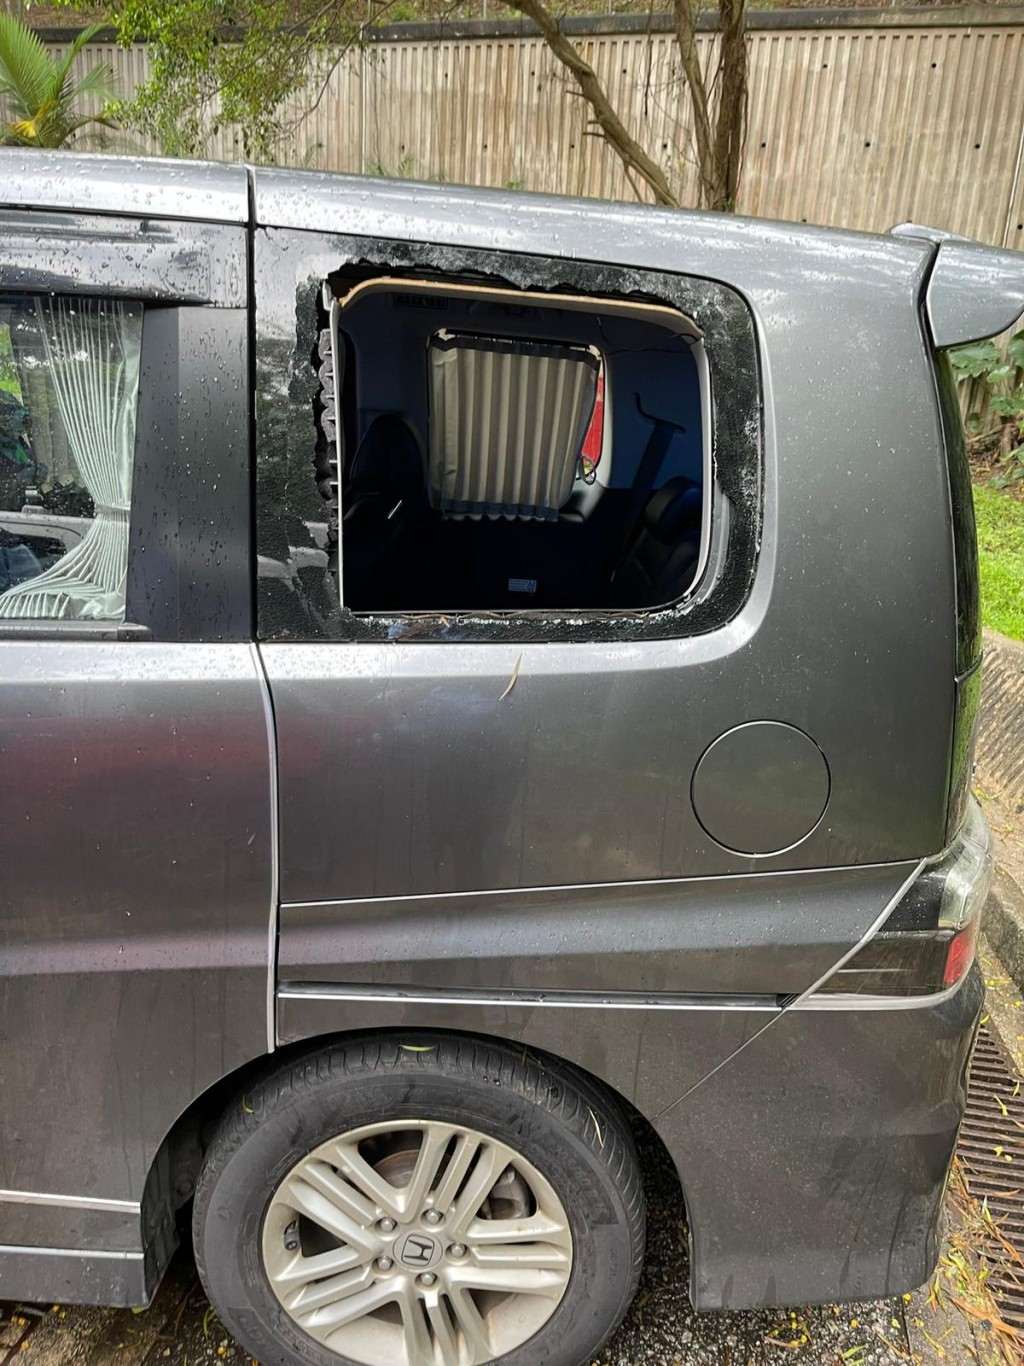 私家車玻璃車窗被打爆。圖:警方提供